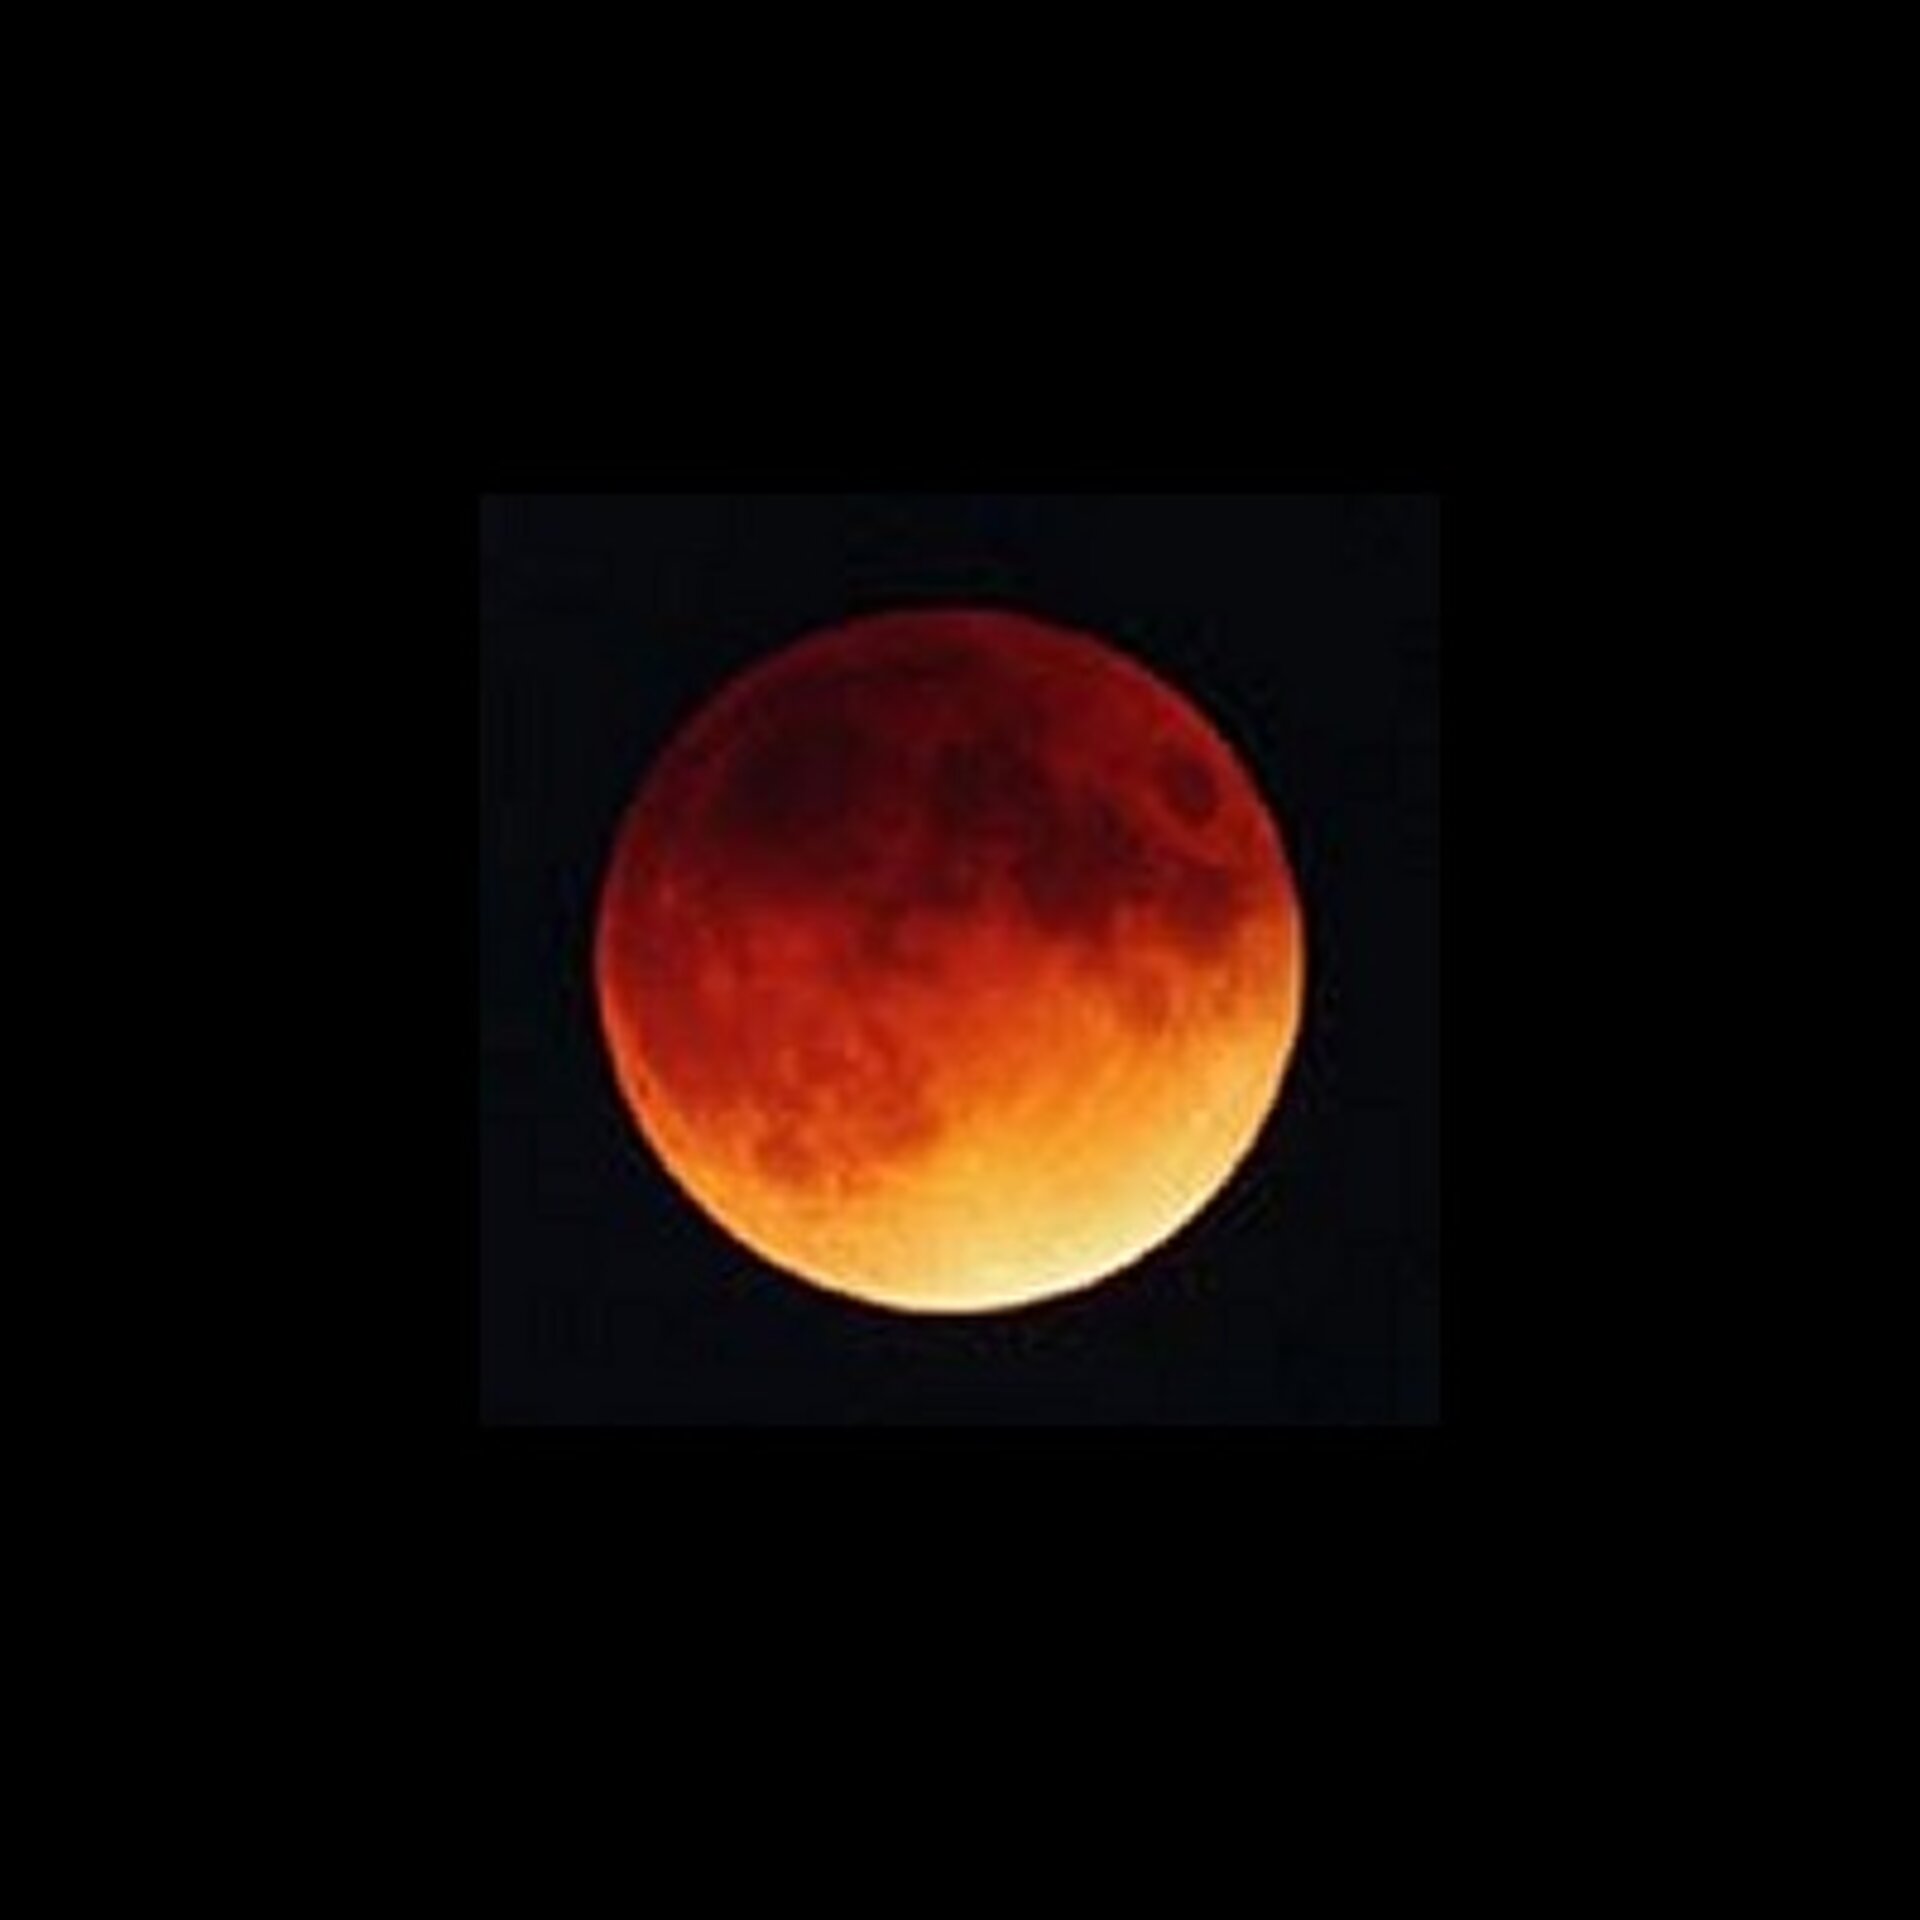 De  totaal verduisterde maan straalt met een oranje-rode gloed